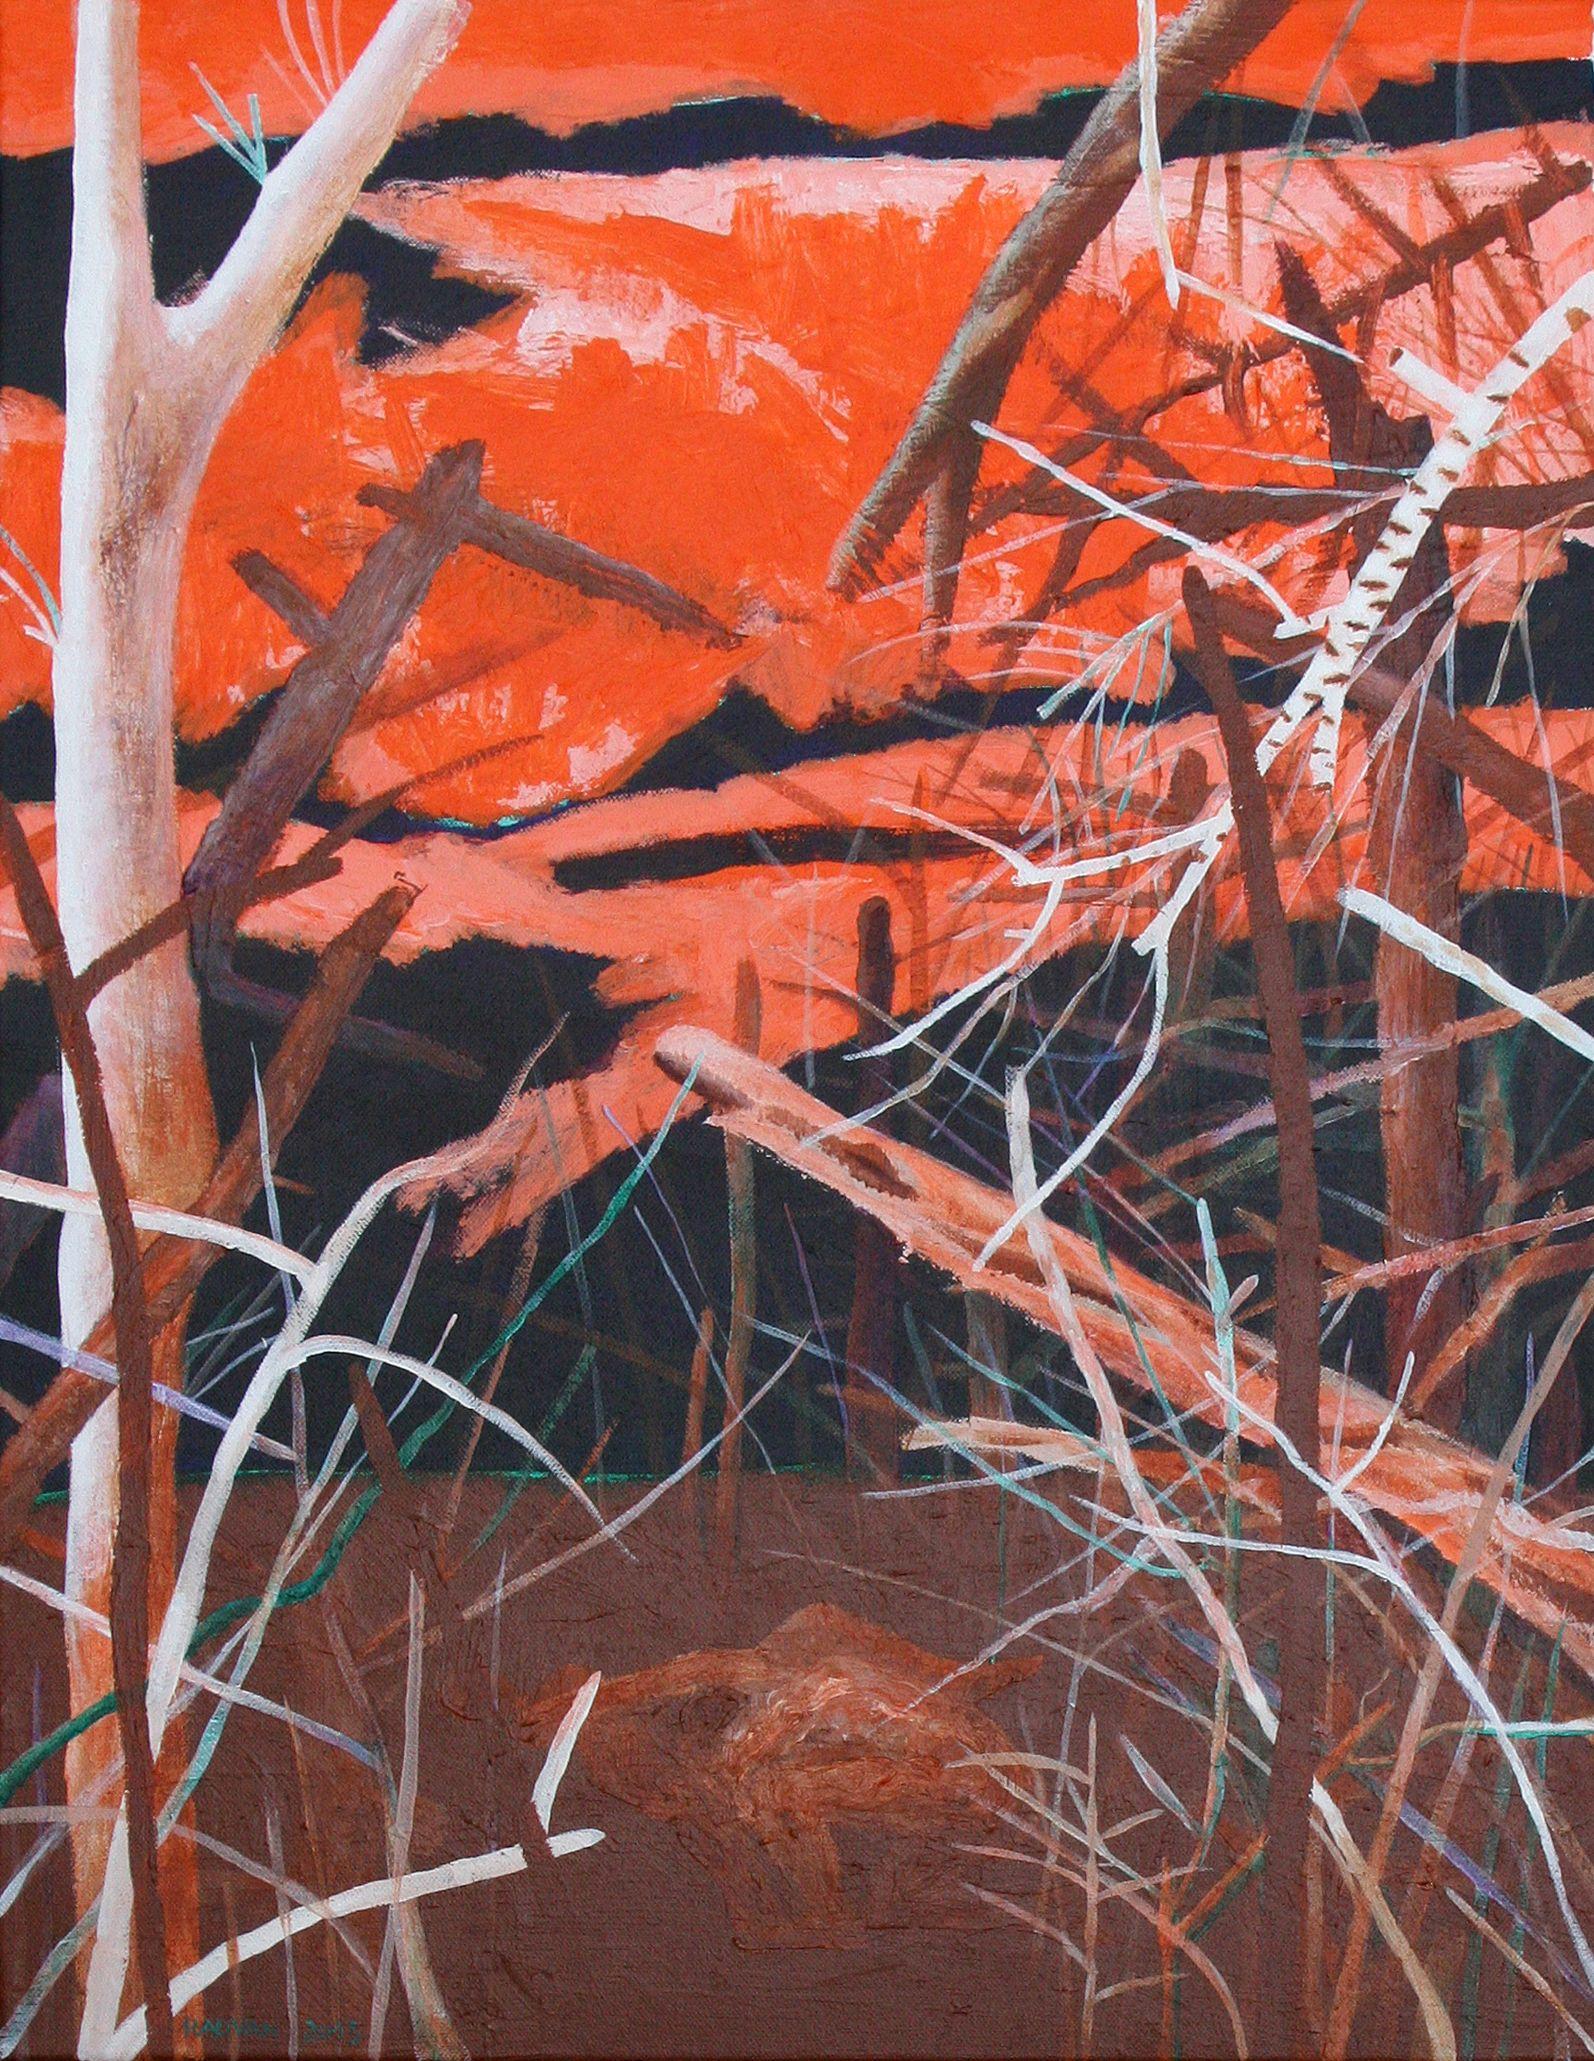 Alexandru Rădvan Figurative Painting - Descriptive 1 - Contemporary Art, Nature, Landscape, Orange, Brown, Trees